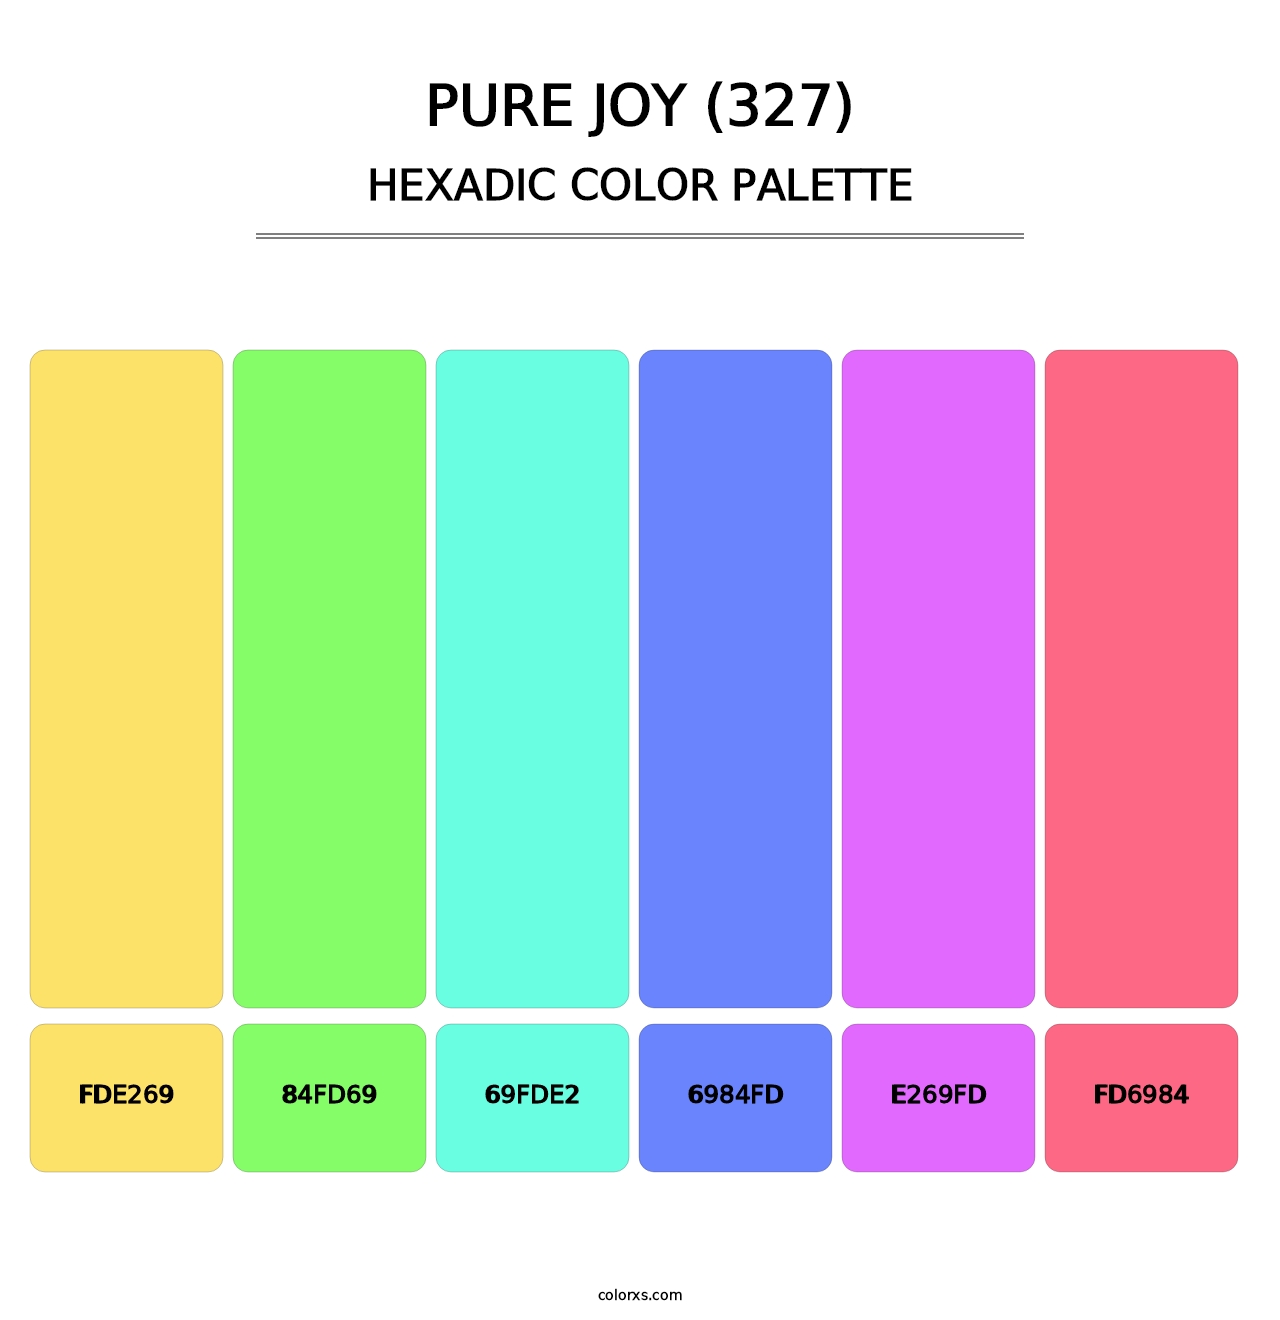 Pure Joy (327) - Hexadic Color Palette